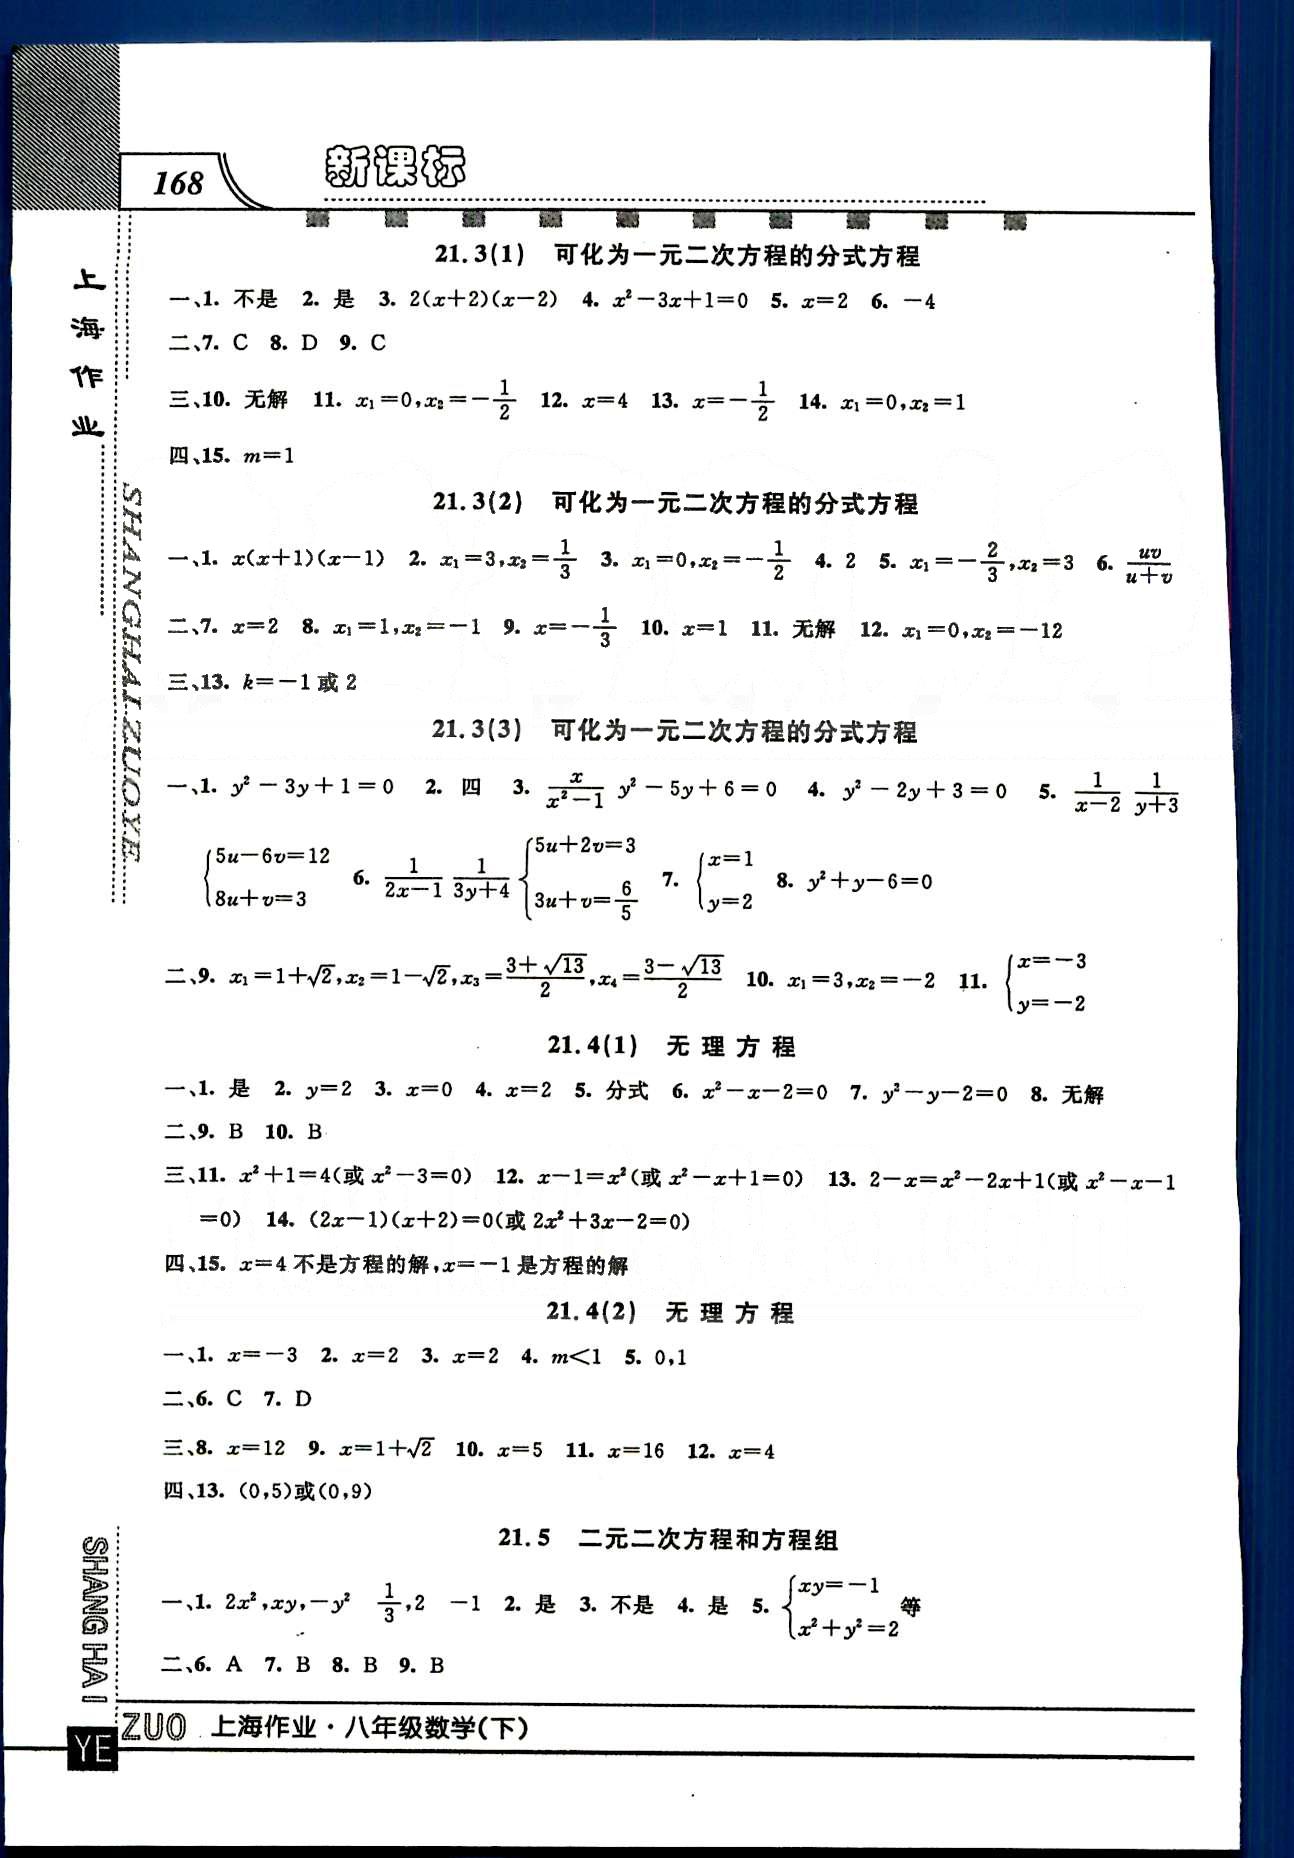 20145 钟书金牌 上海作业八年级下数学上海大学出版社 第二十章-第二十三章 [4]